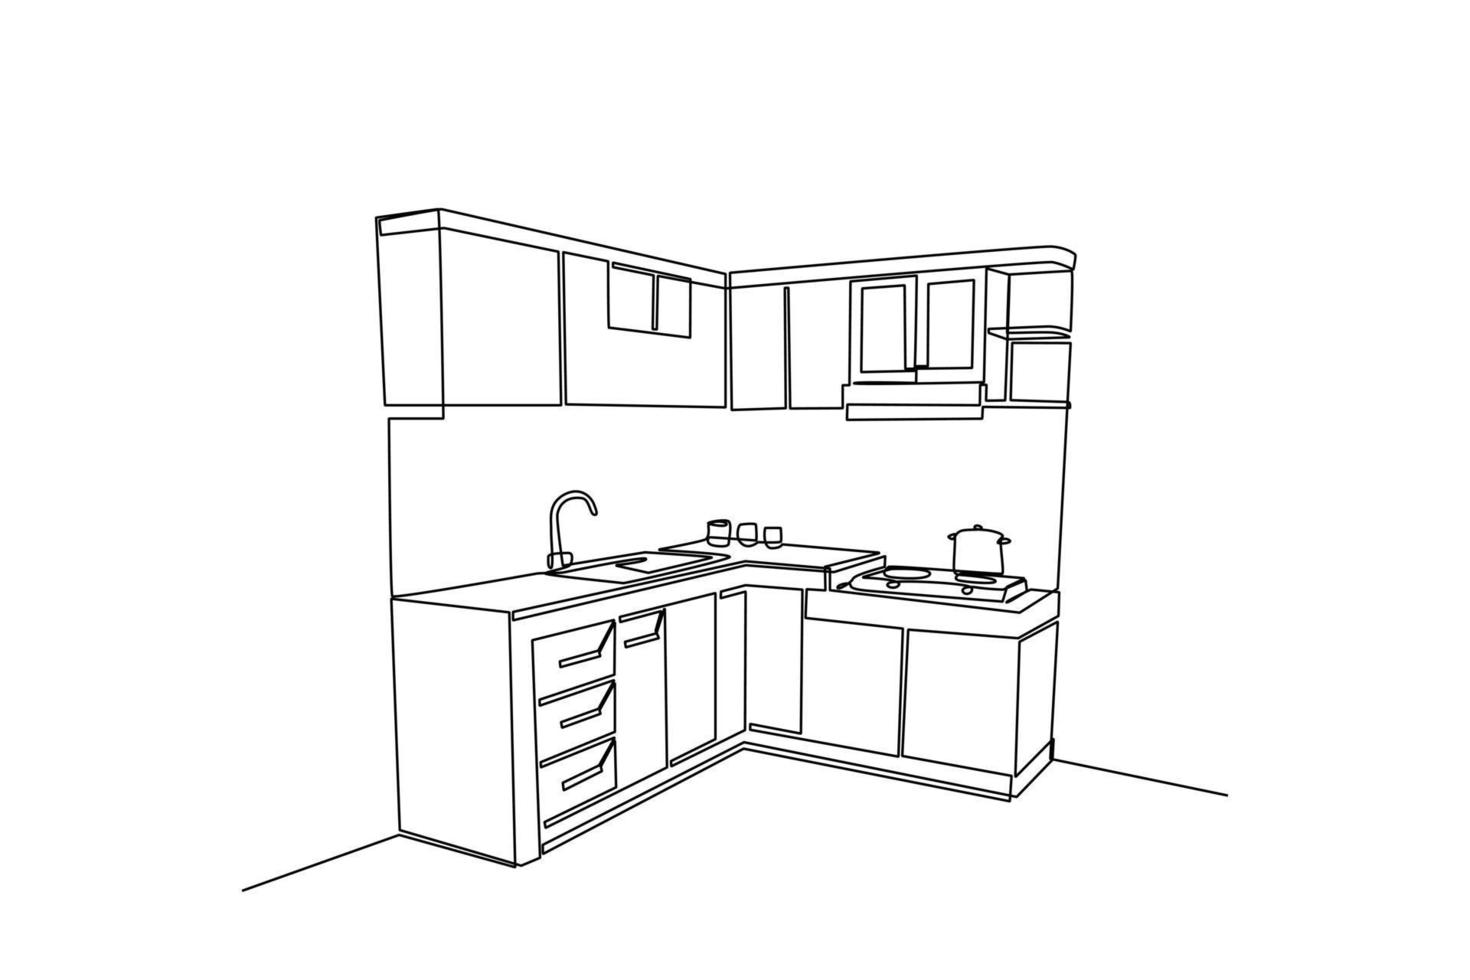 single een lijn tekening modern keuken interieur. keuken kamer concept. doorlopend lijn trek ontwerp grafisch vector illustratie.